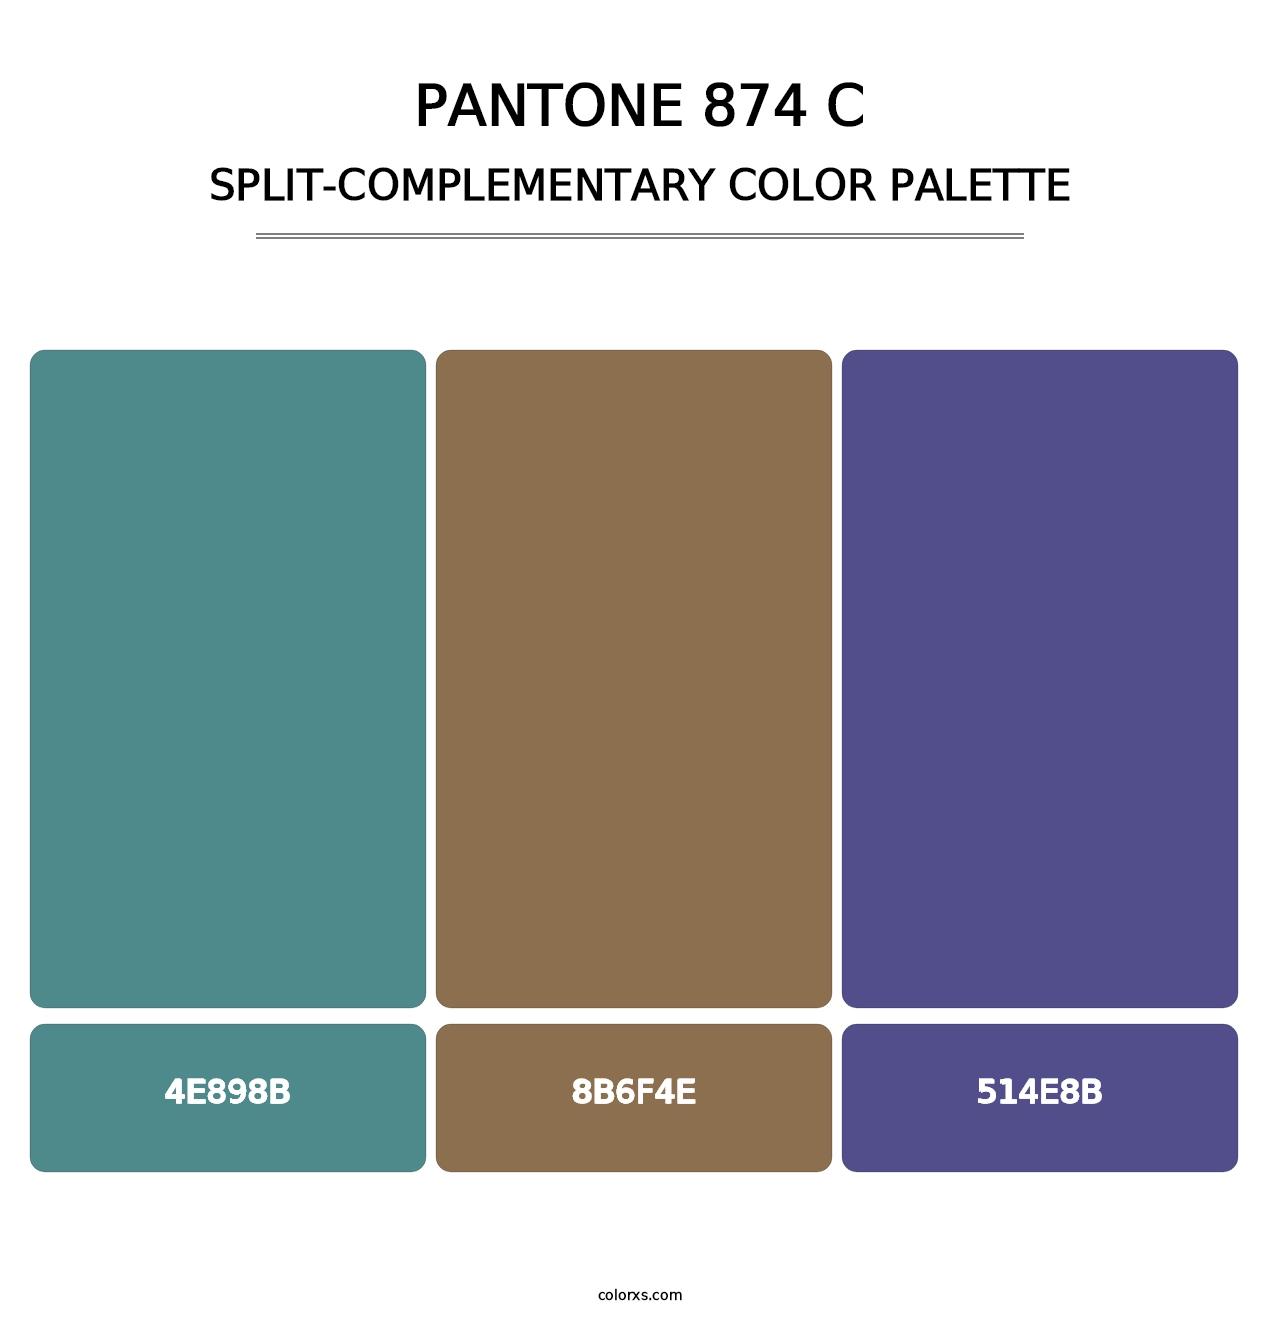 PANTONE 874 C - Split-Complementary Color Palette